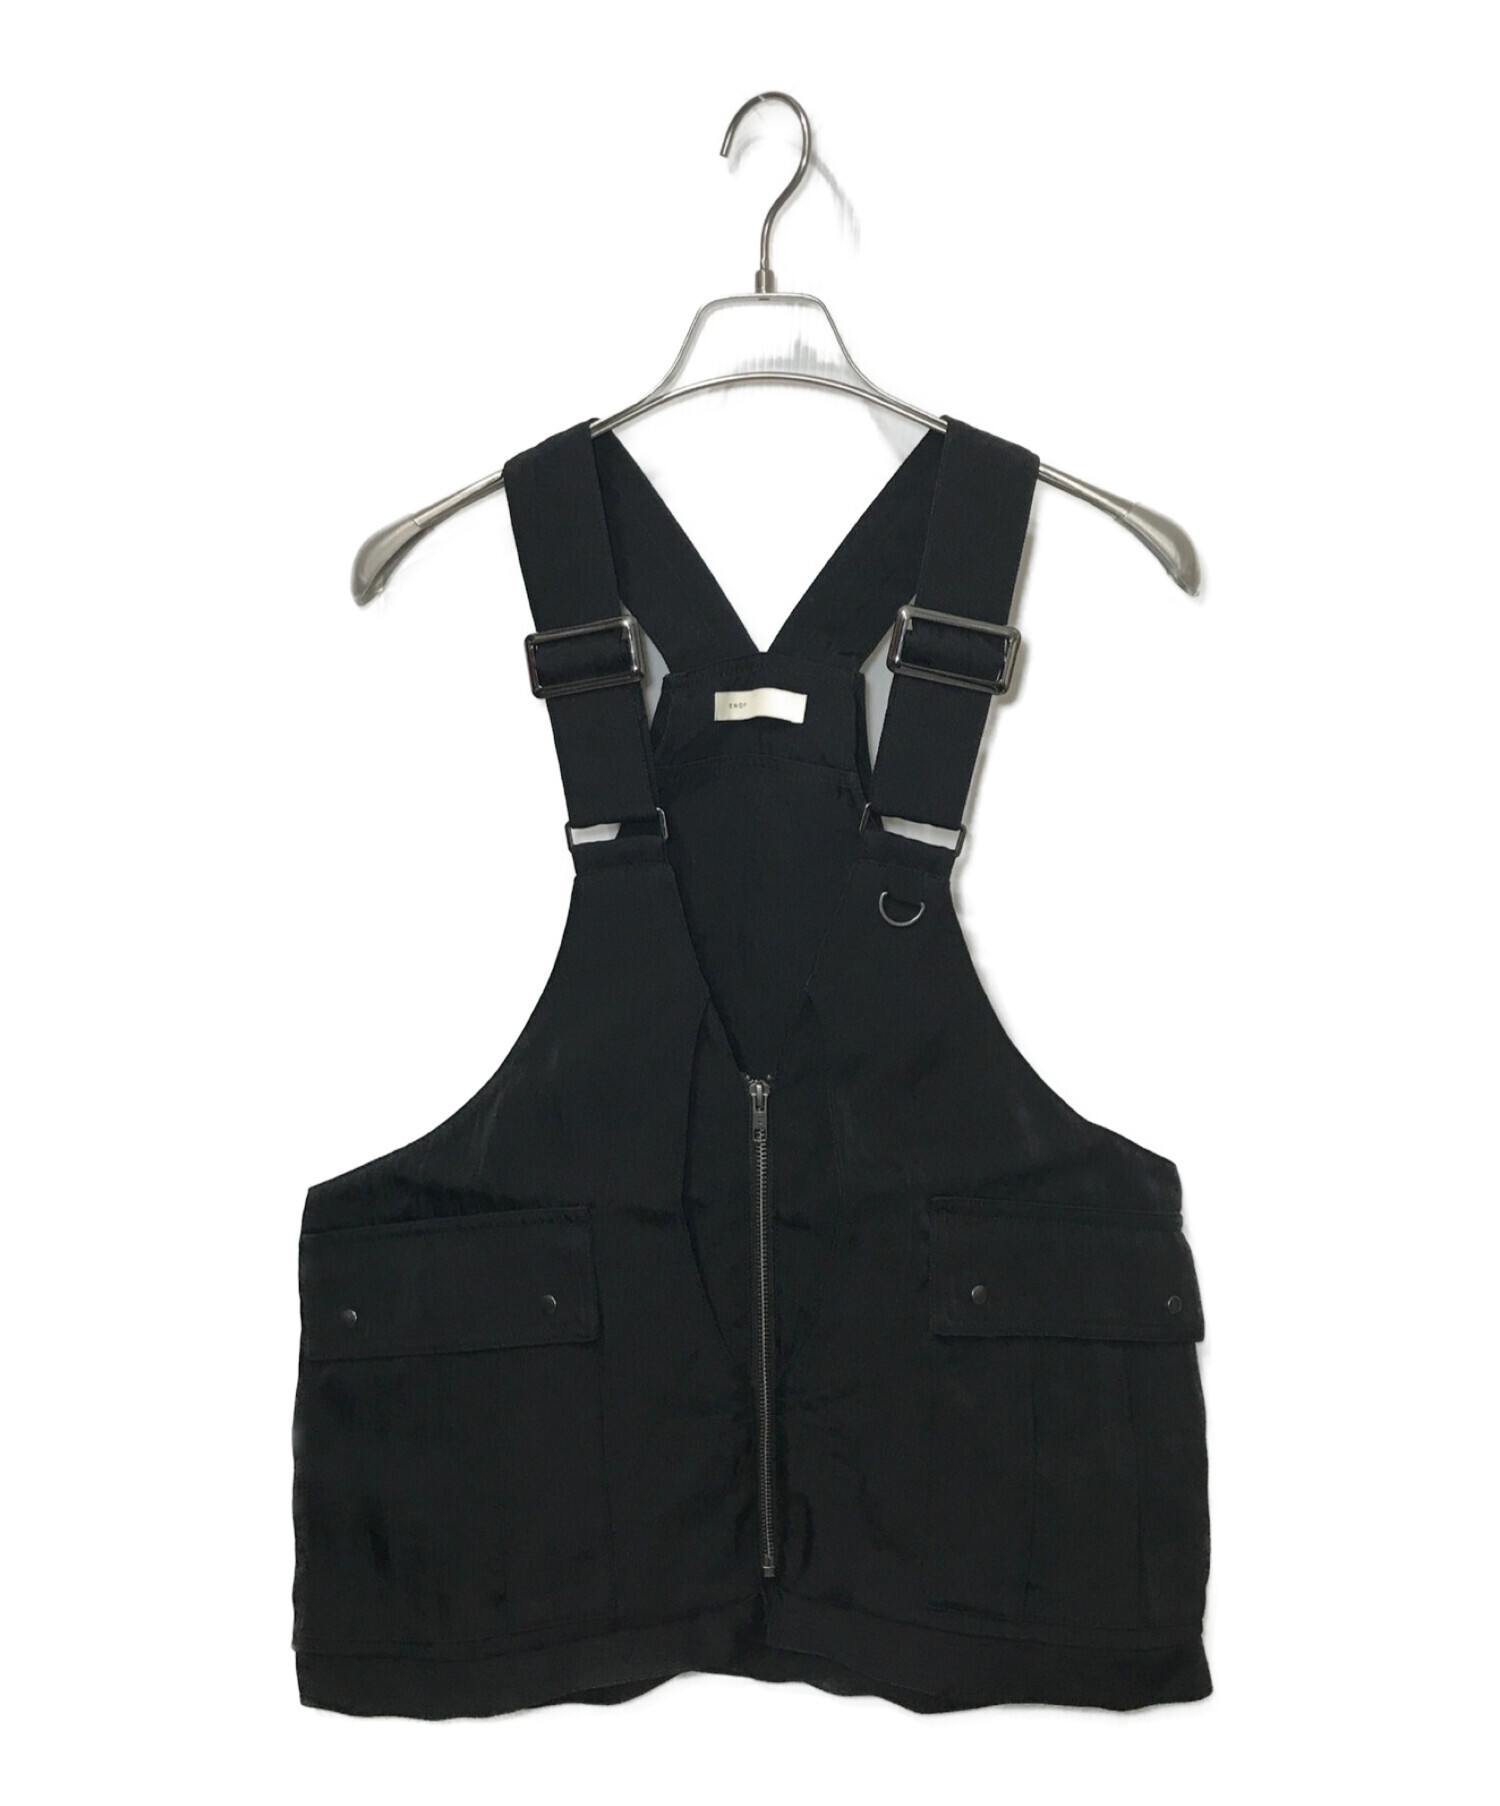 enof twill bag vest | myglobaltax.com